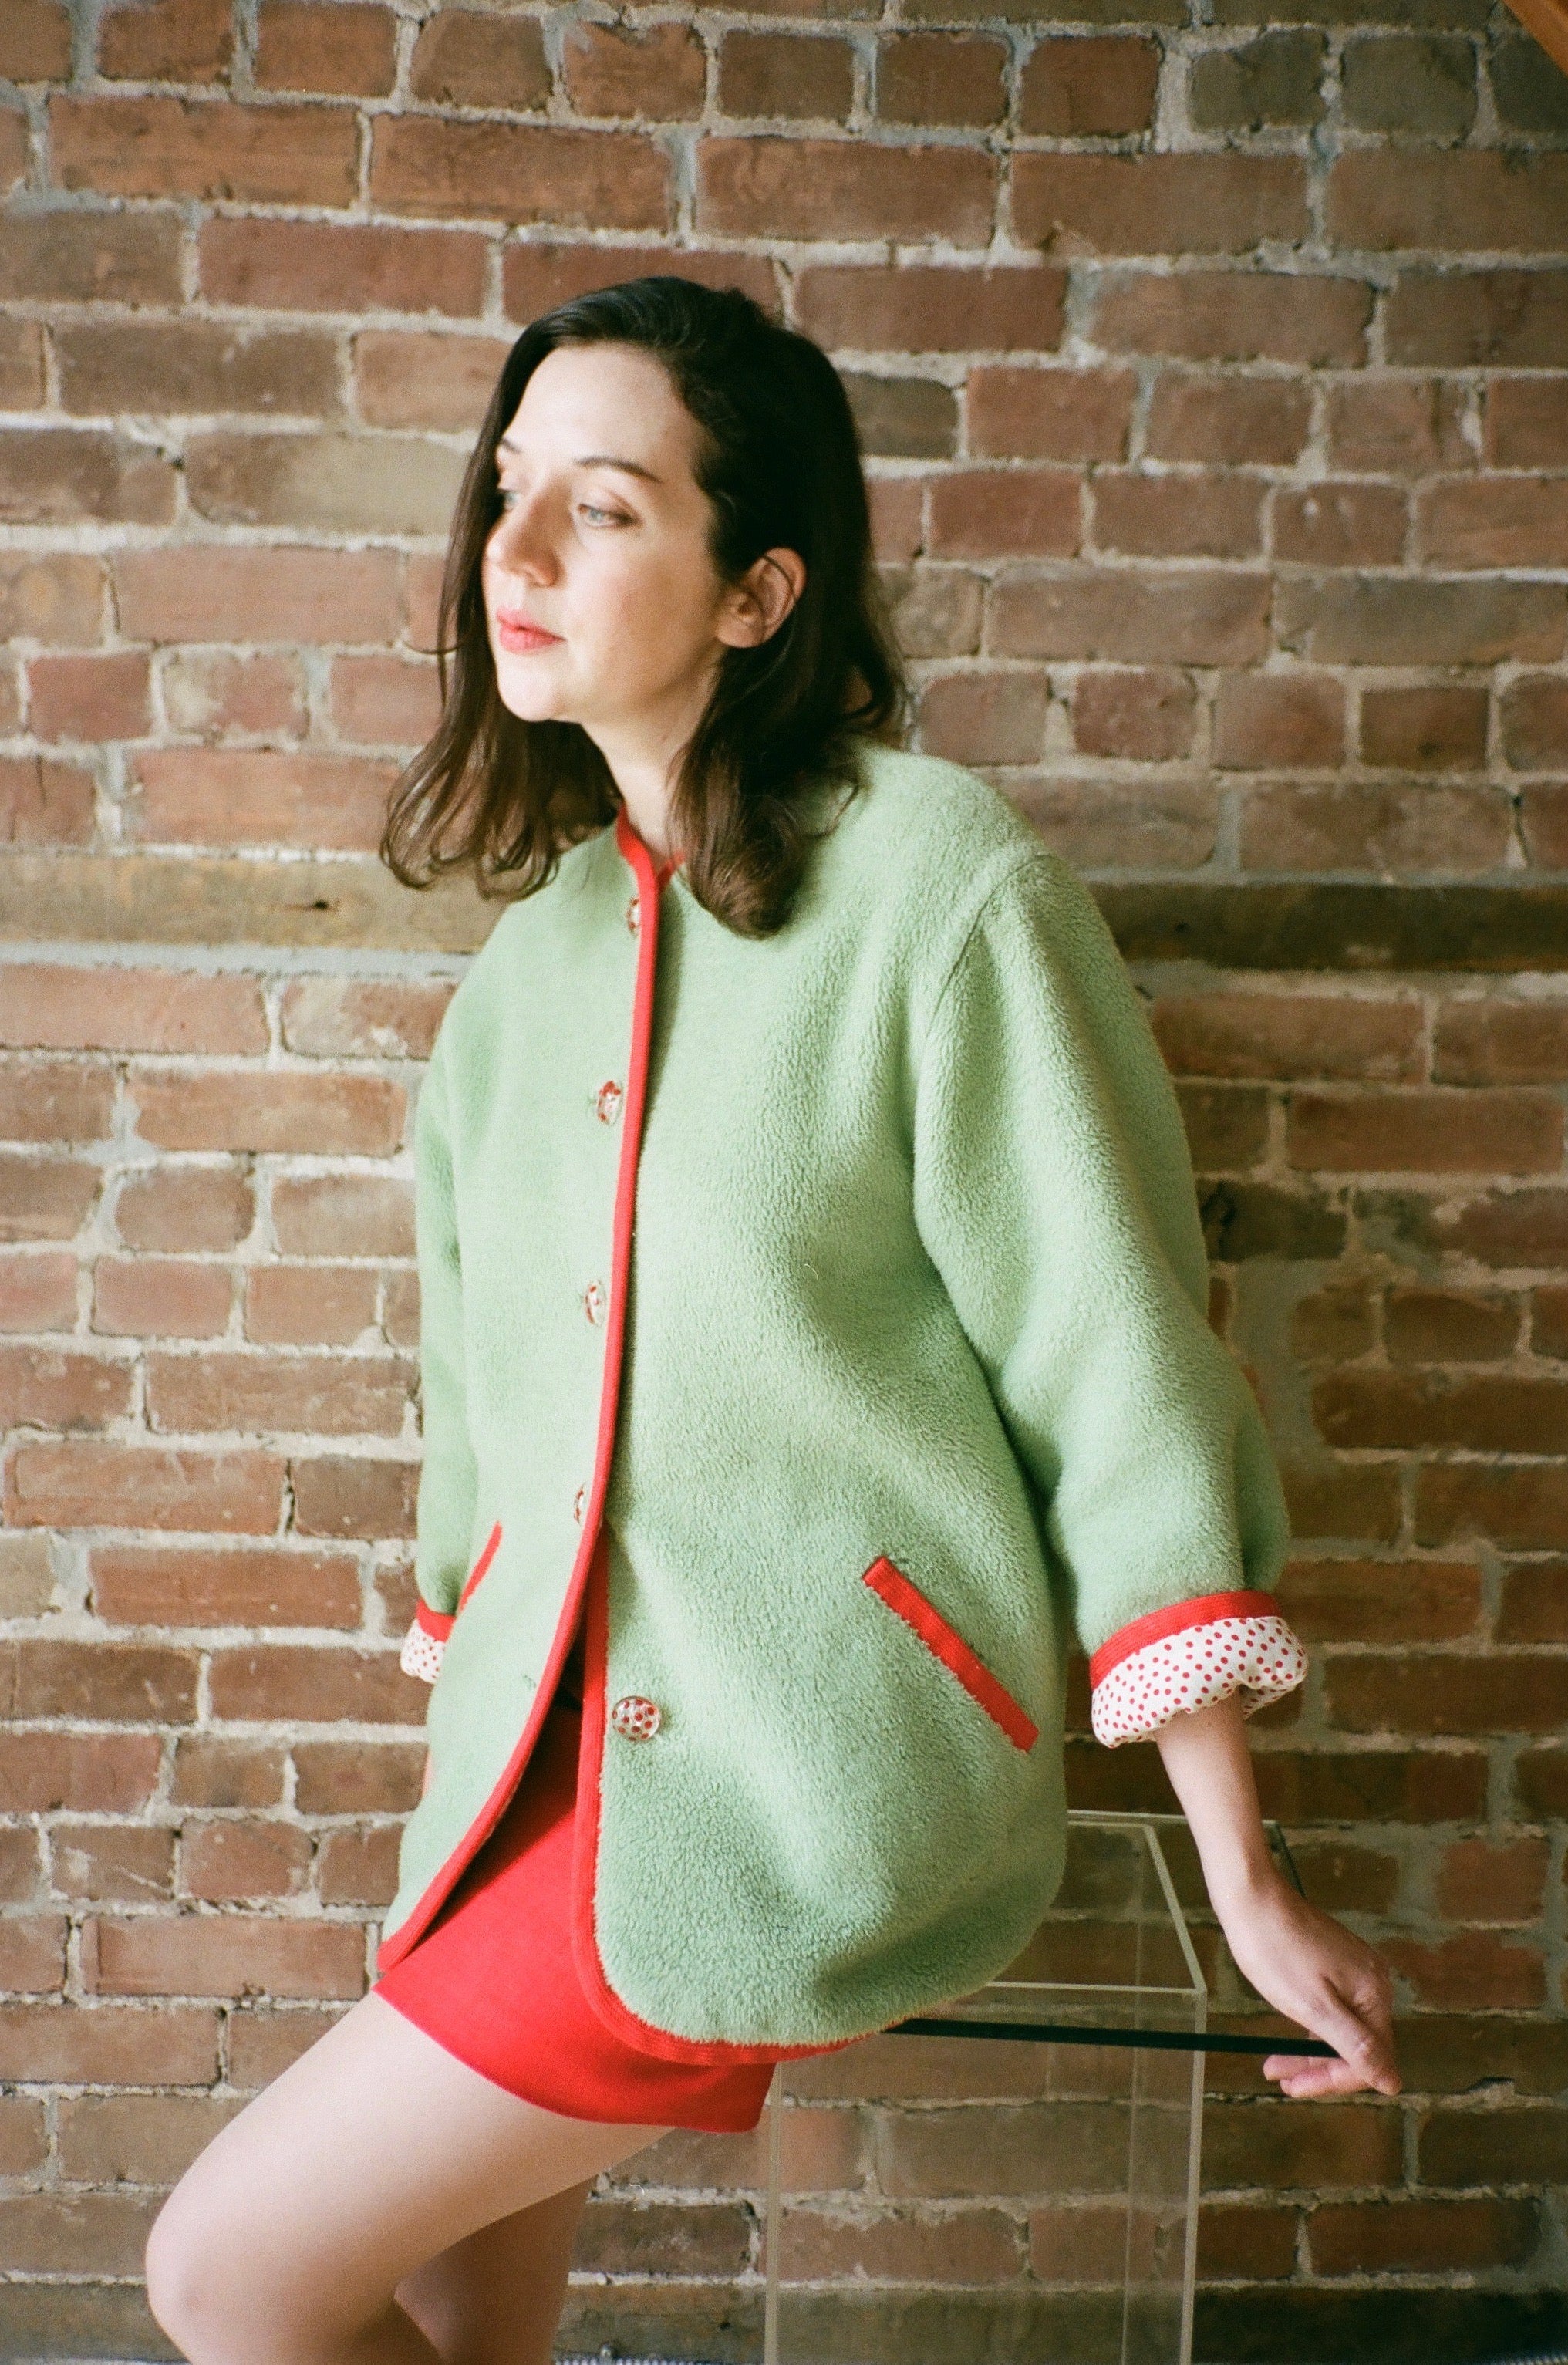 1990s Green & Red Teddy Coat Skirt Set